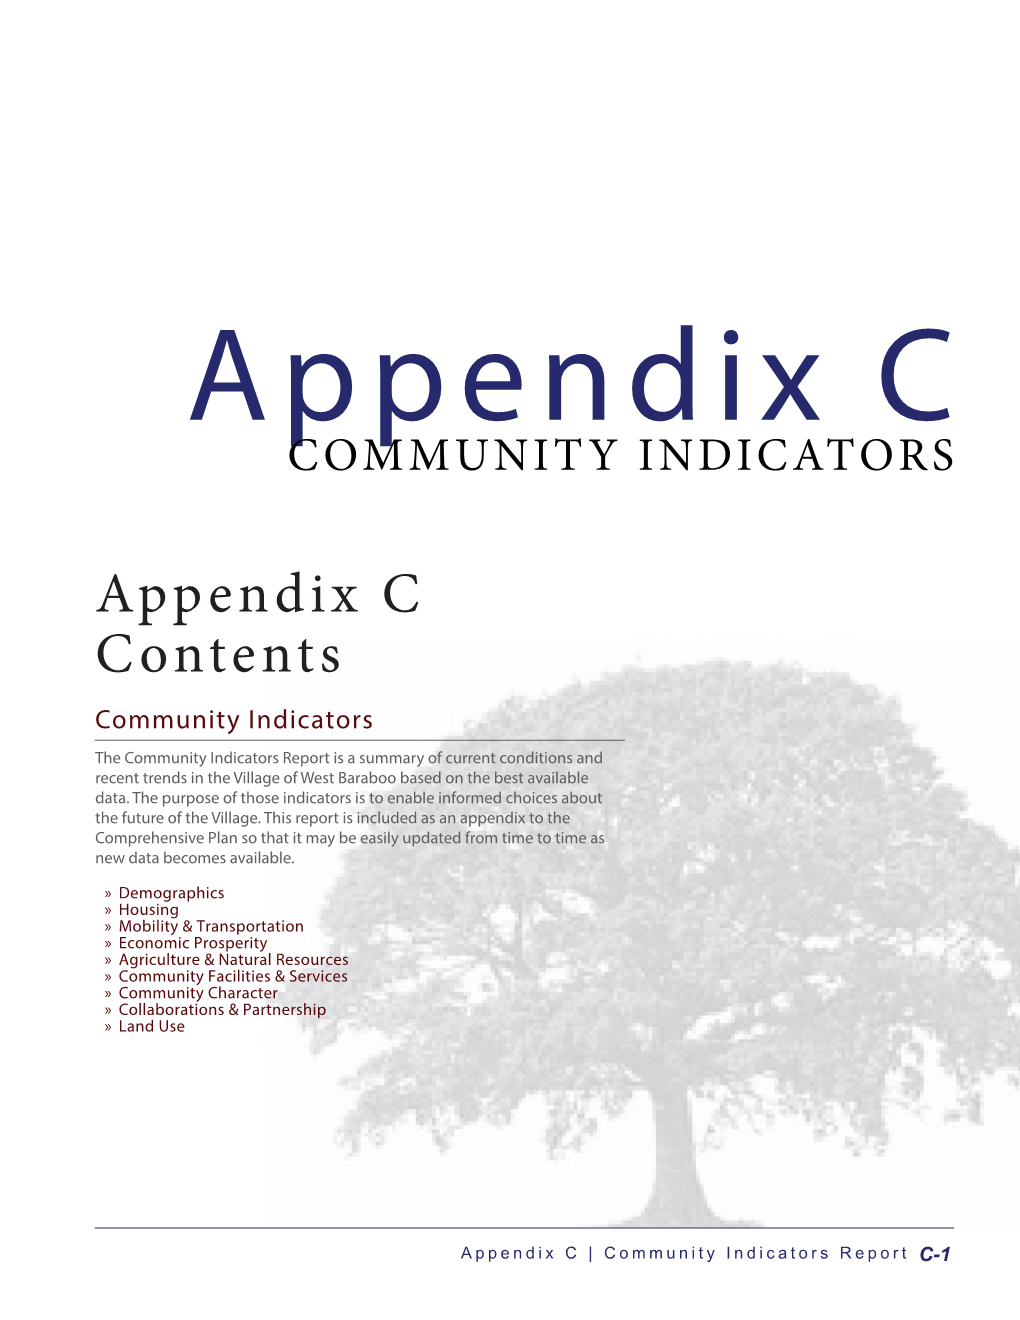 Appendix C Contents